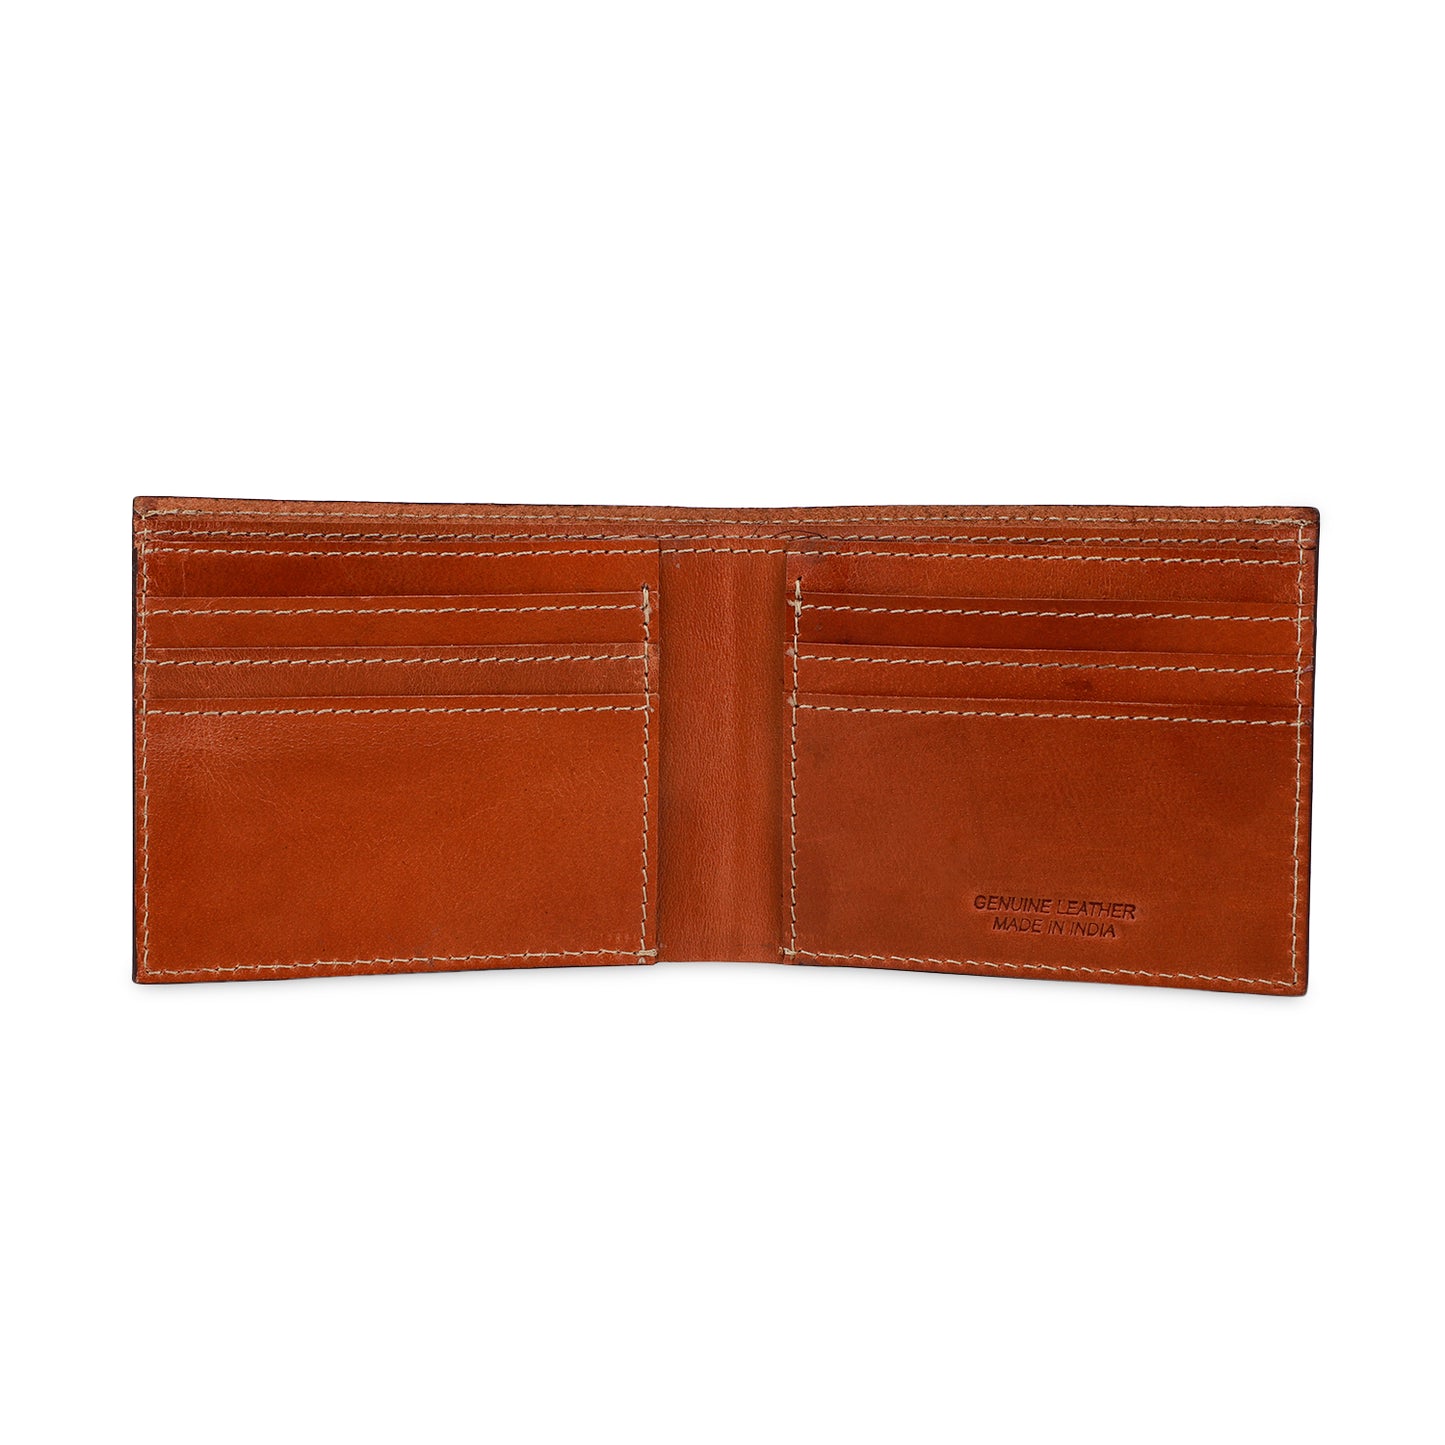 Two tone brown bi-fold wallet